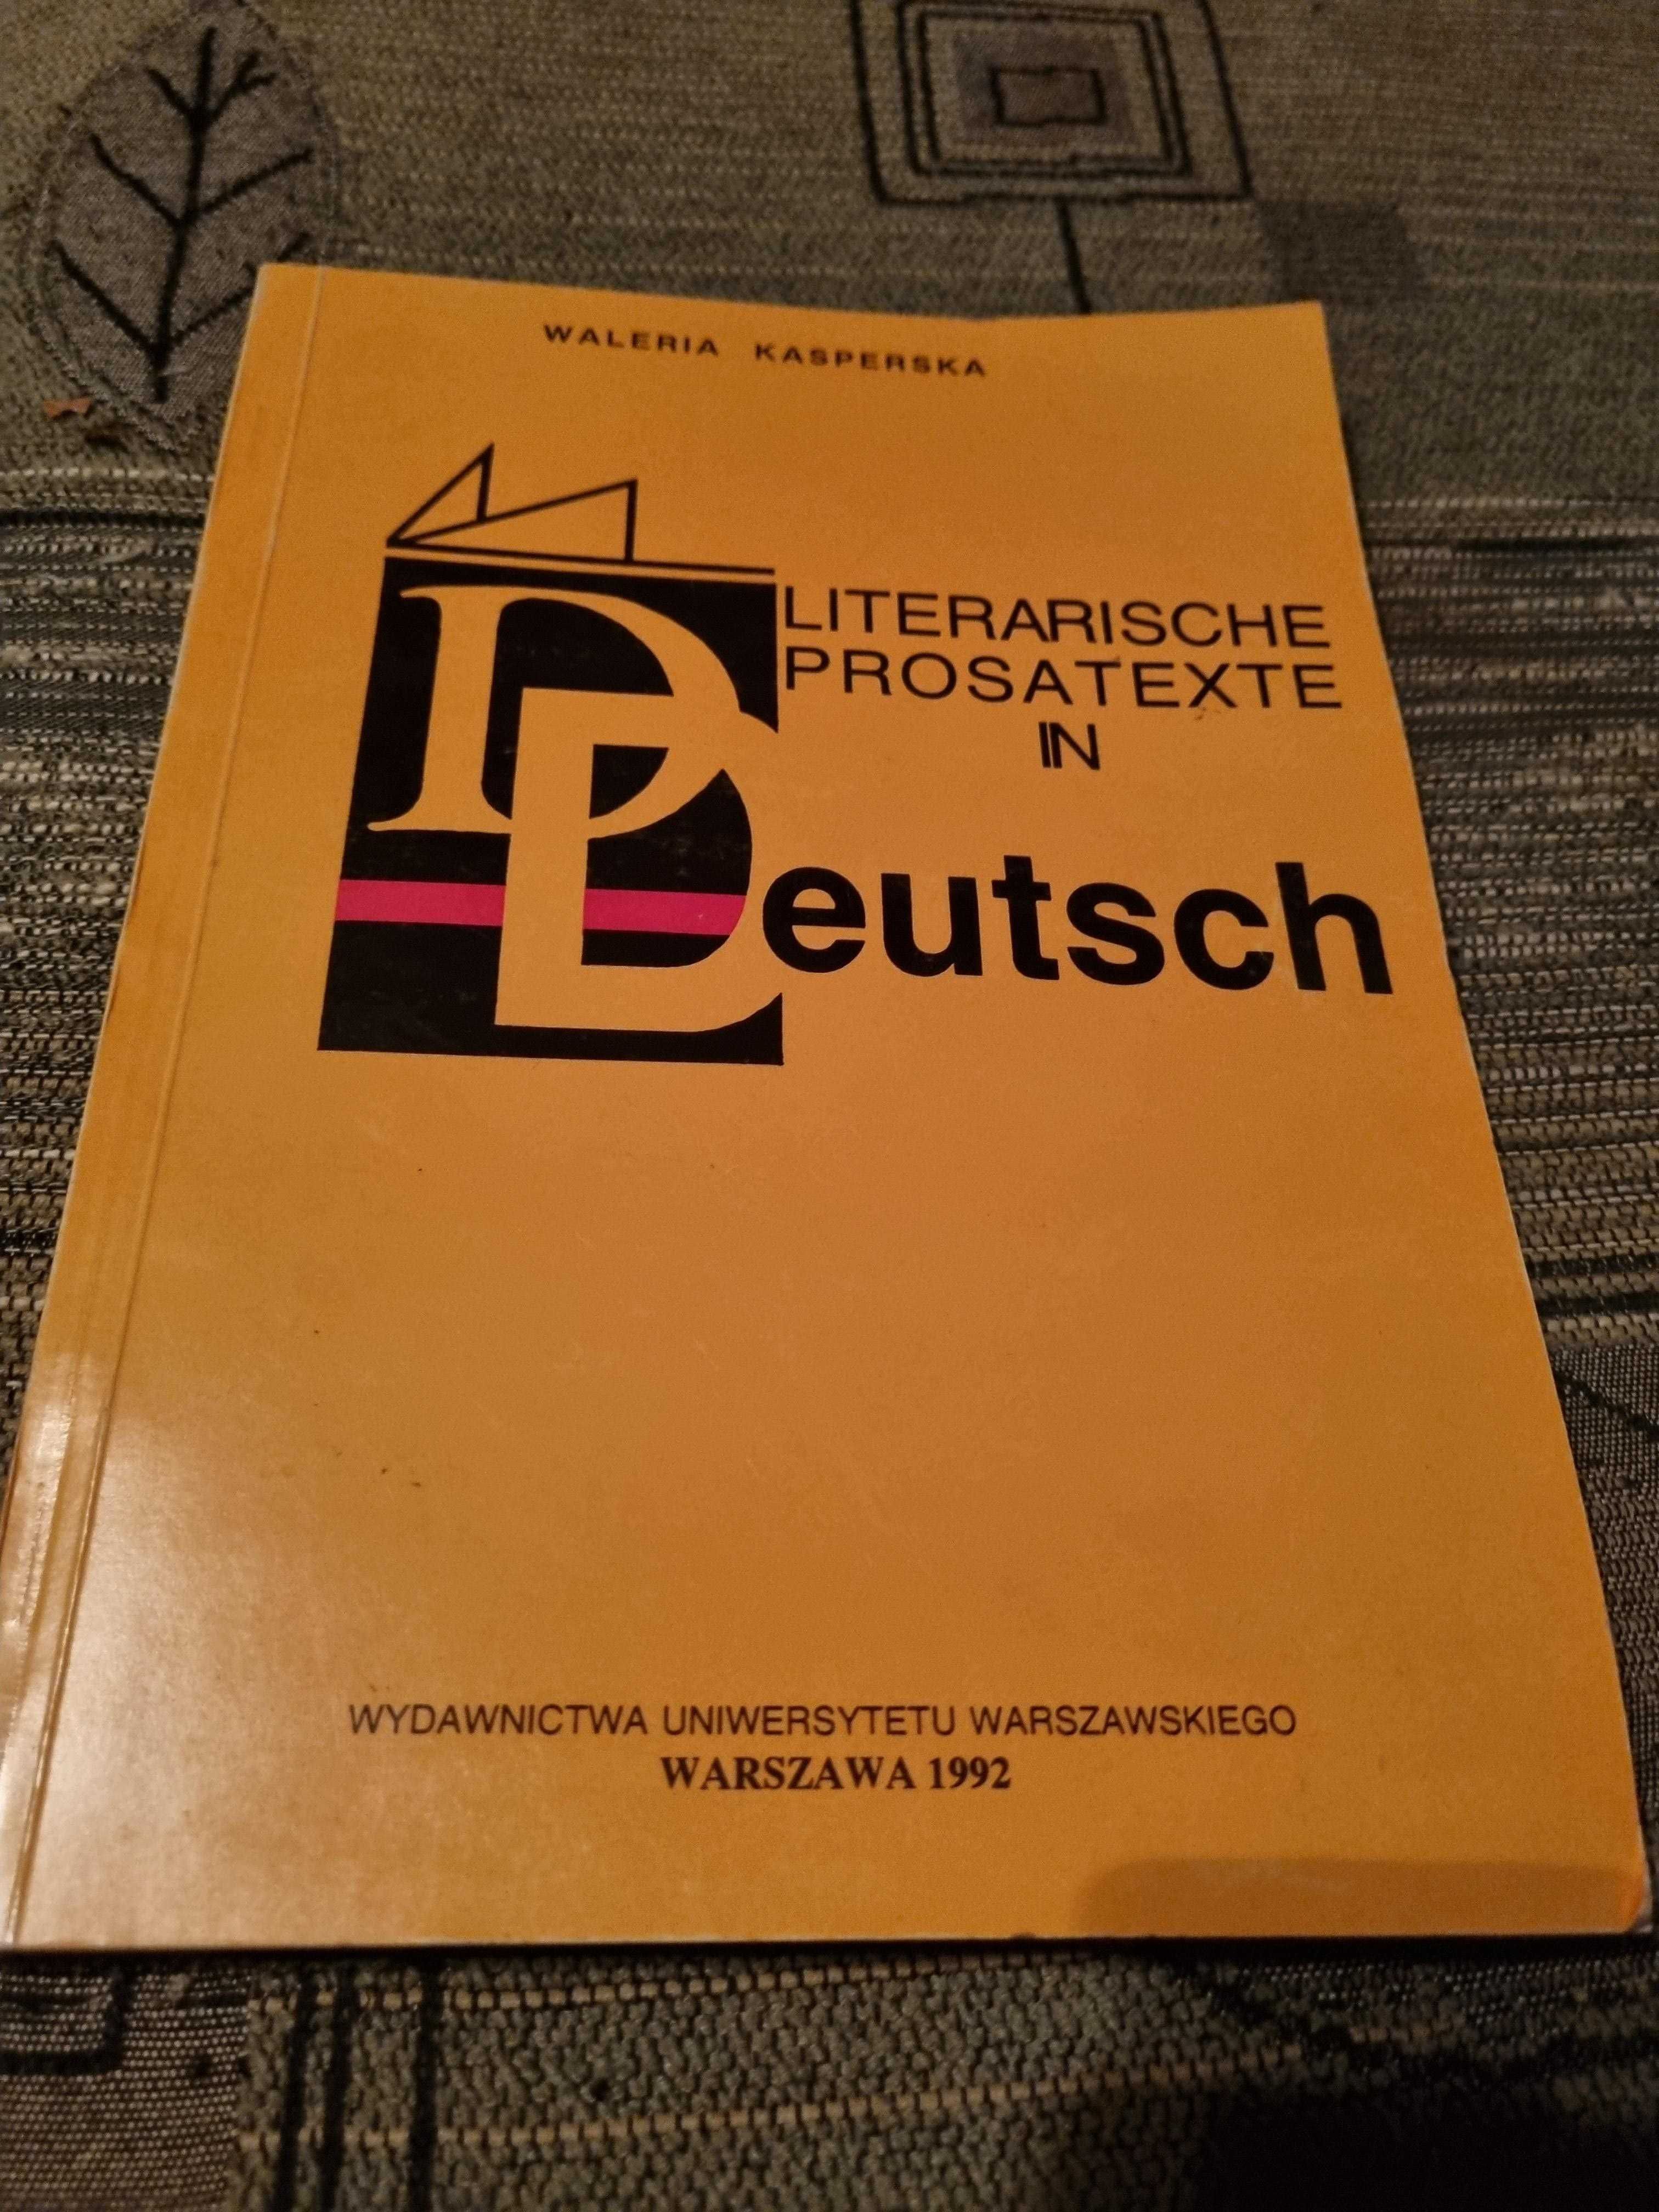 Literarische prosatexte in Deutsch, Waleria Kasperska, 1992